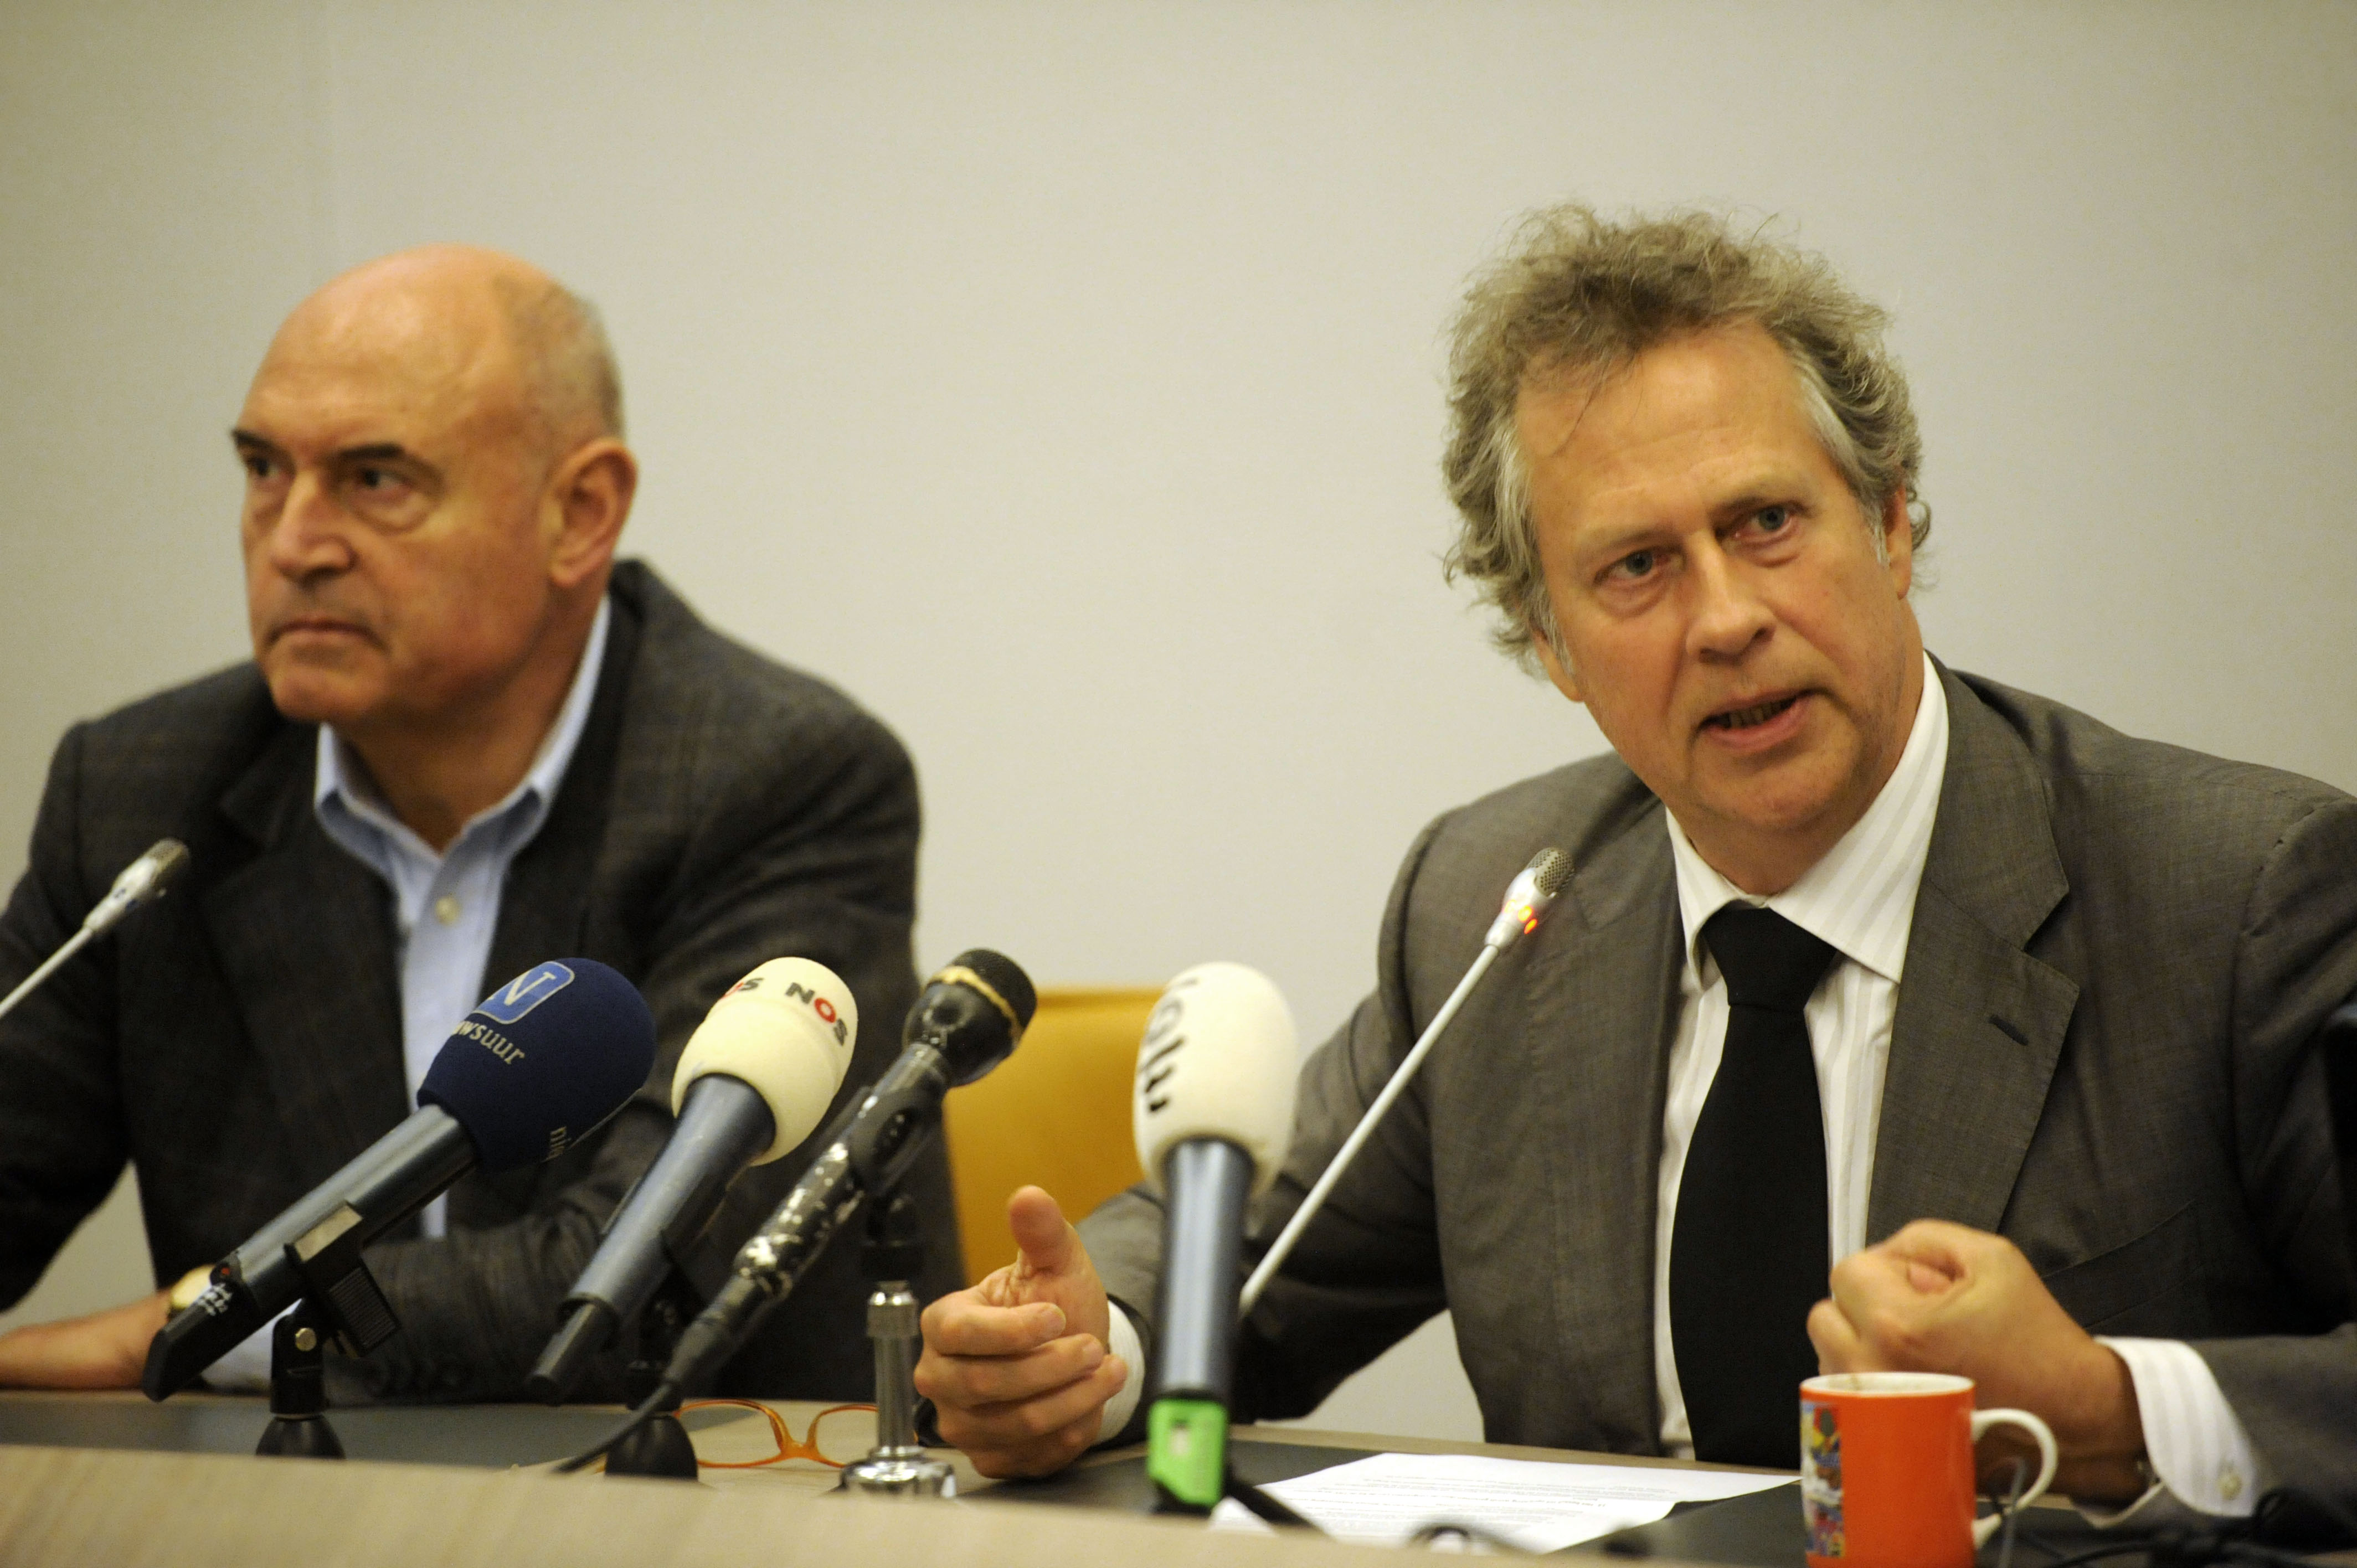 Han Noten (r.) naast oud-voorzitter van de SER Herman Wijffels